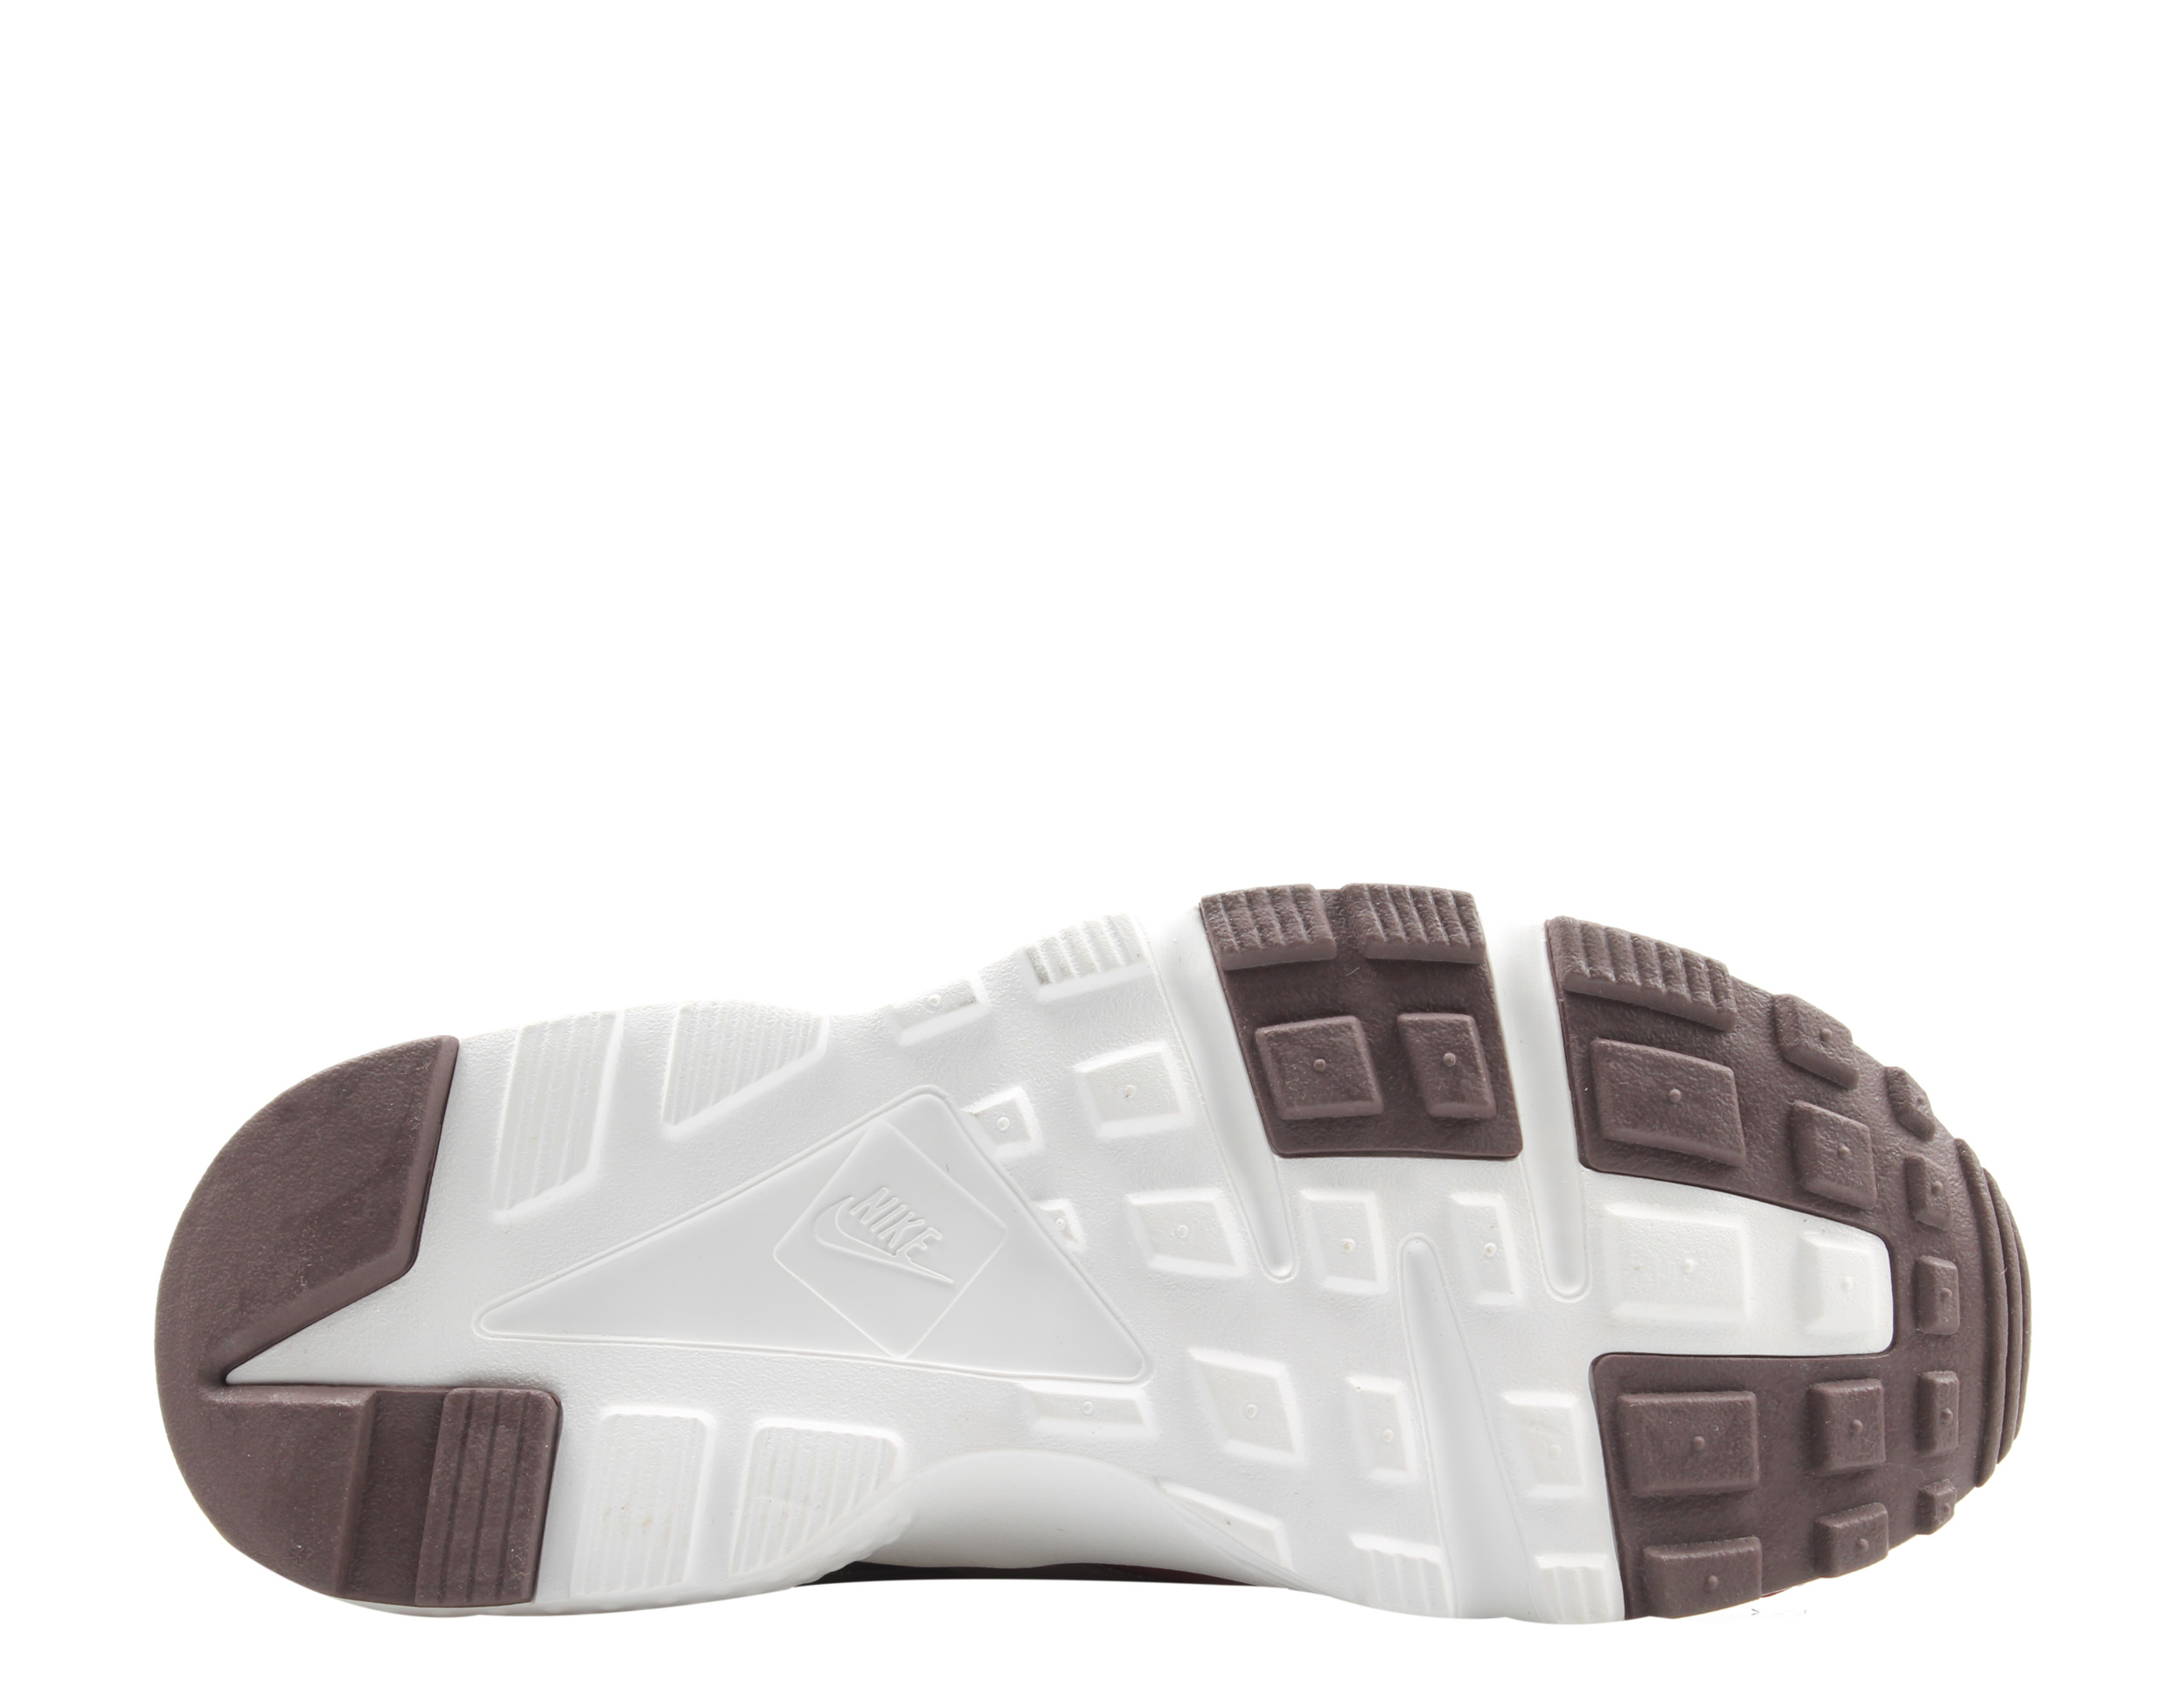 Nike Huarache Run TU (GS) Team Red/Burgundy Big Kids Running Shoes AV3228-600 - image 5 of 6